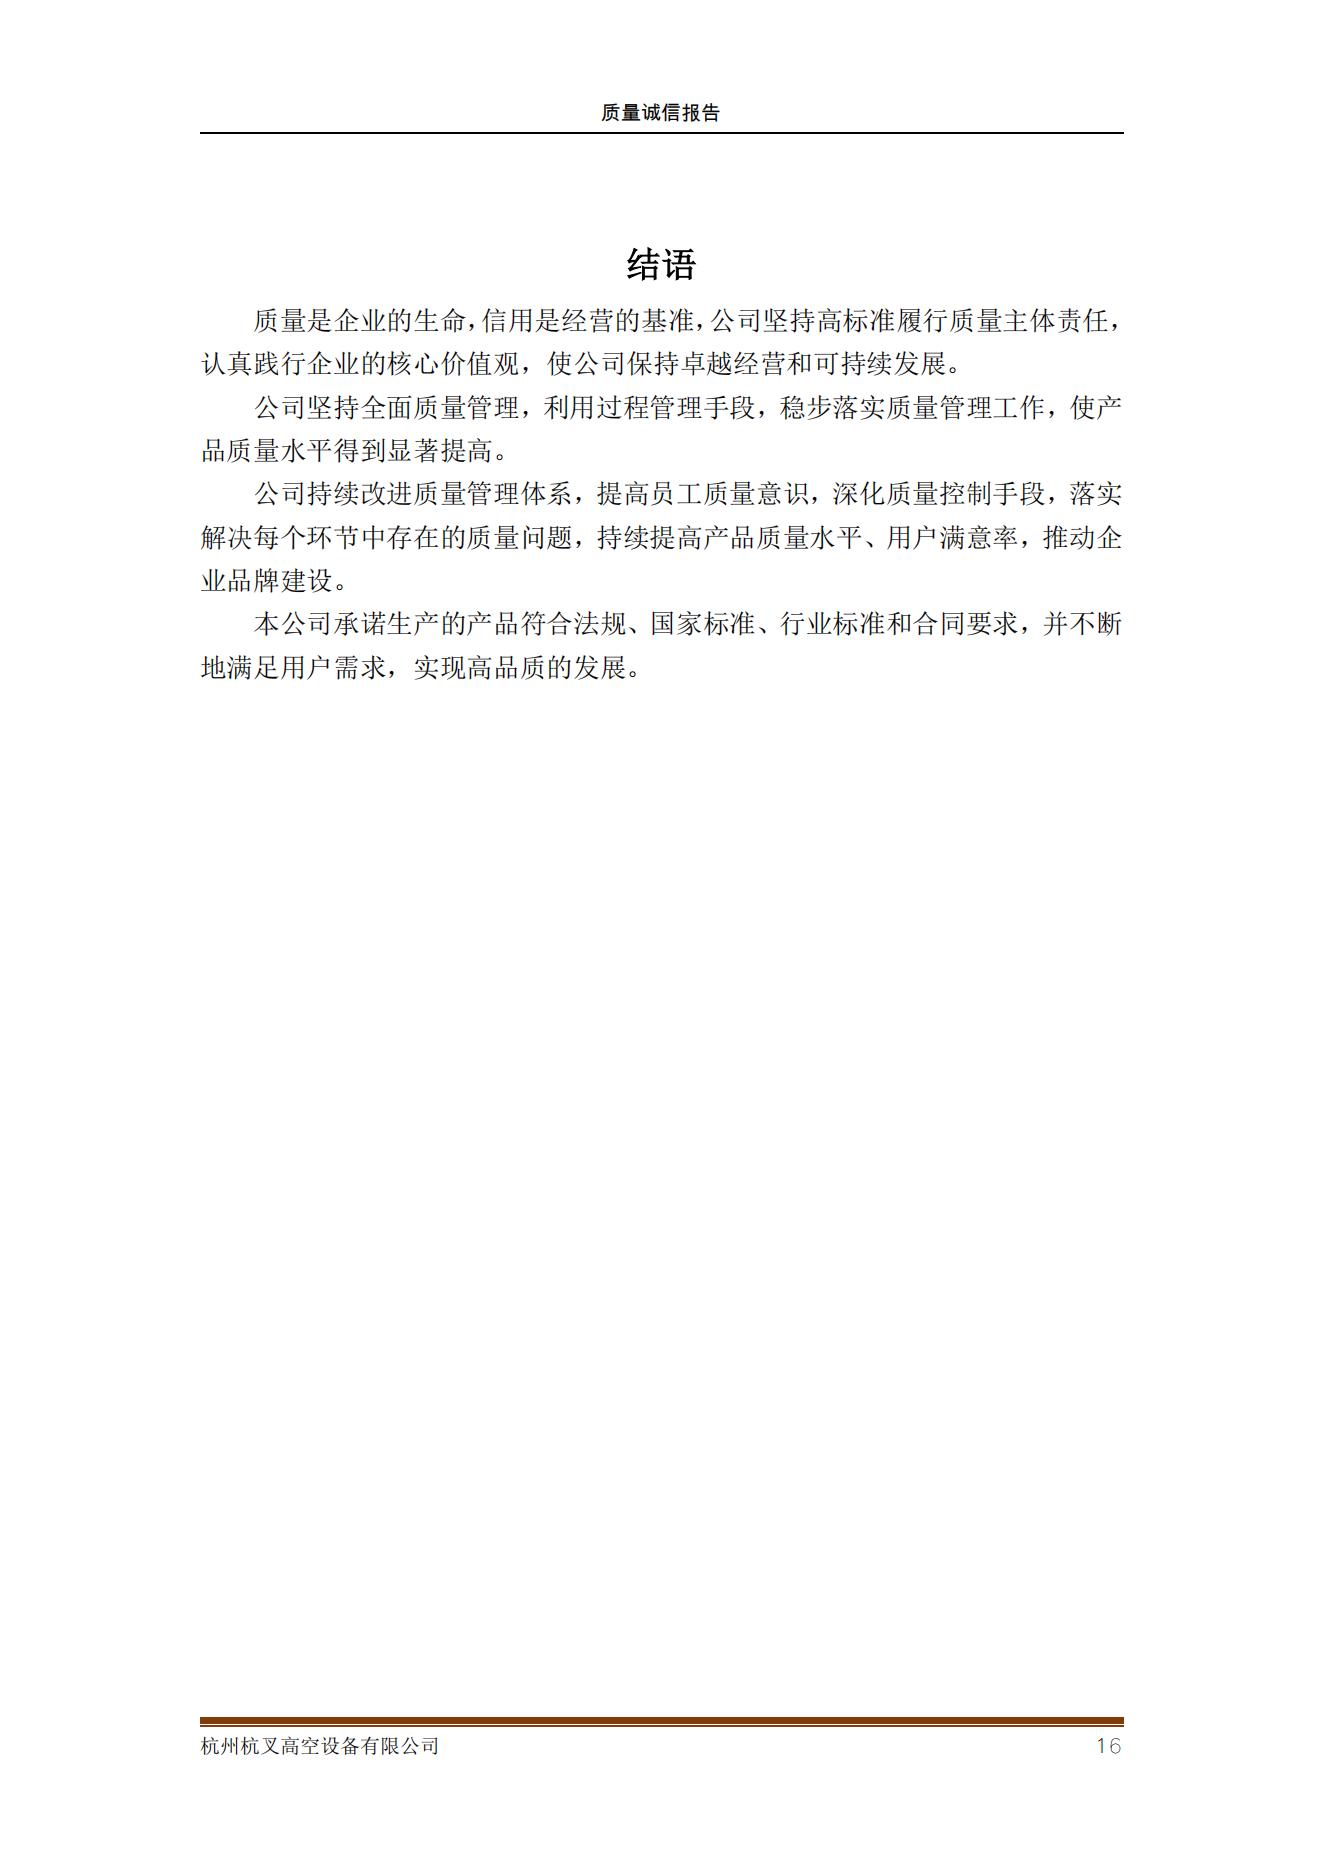 杭州杭叉高空設備公司2021年質量誠信報告(圖16)